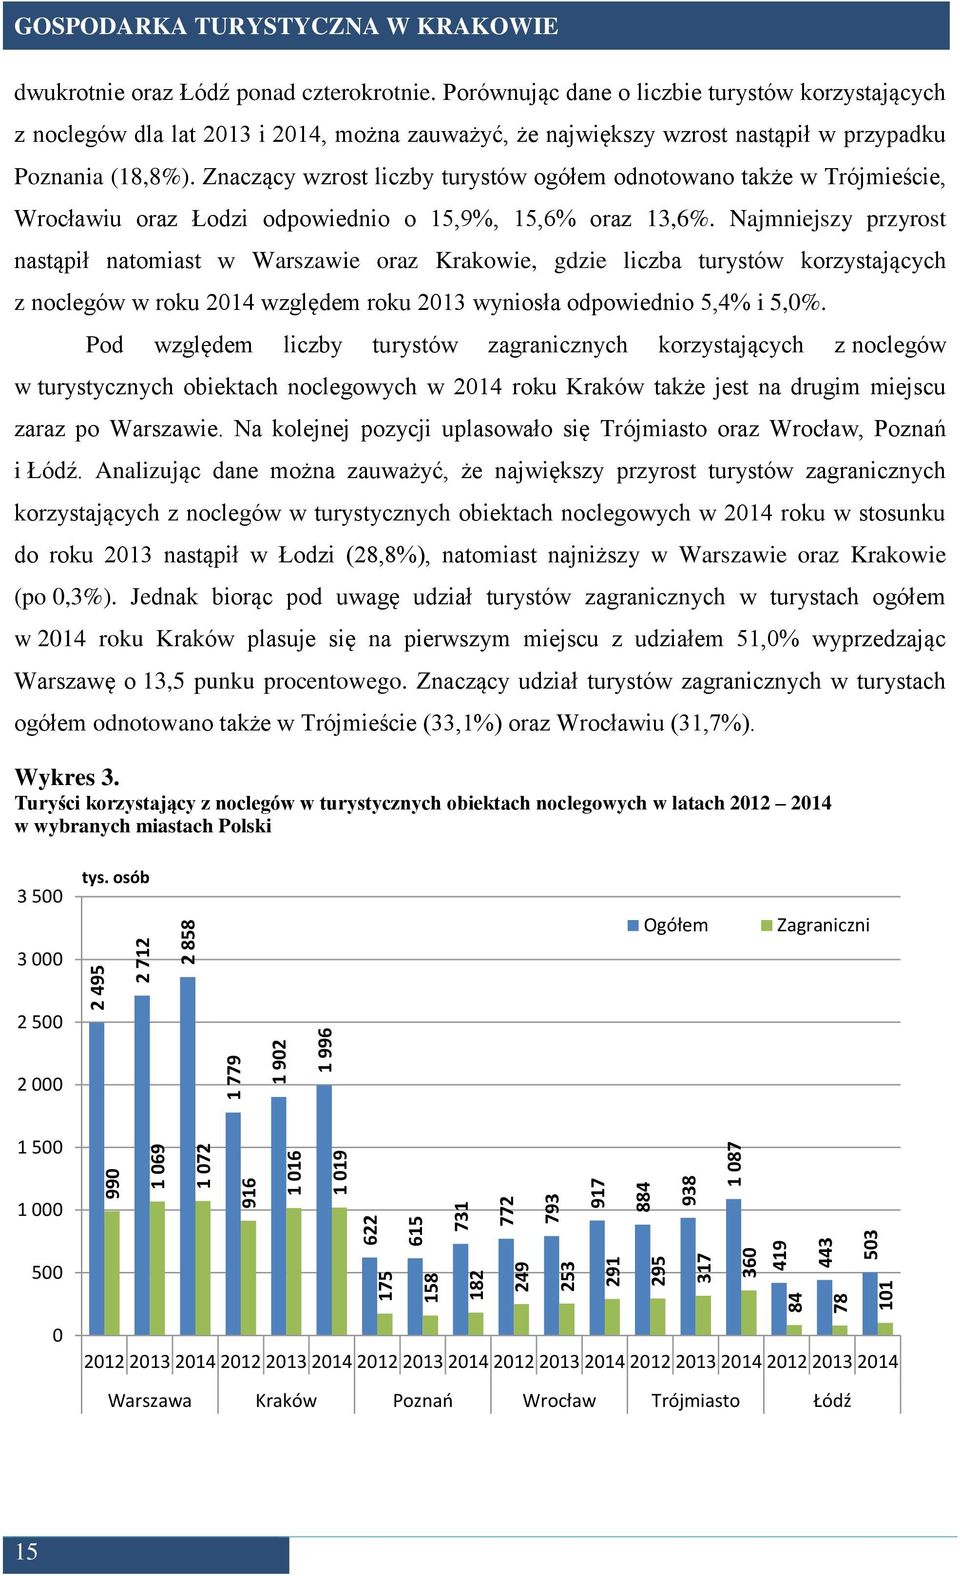 Znaczący wzrost liczby turystów ogółem odnotowano także w Trójmieście, Wrocławiu oraz Łodzi odpowiednio o 15,9%, 15,6% oraz 13,6%.